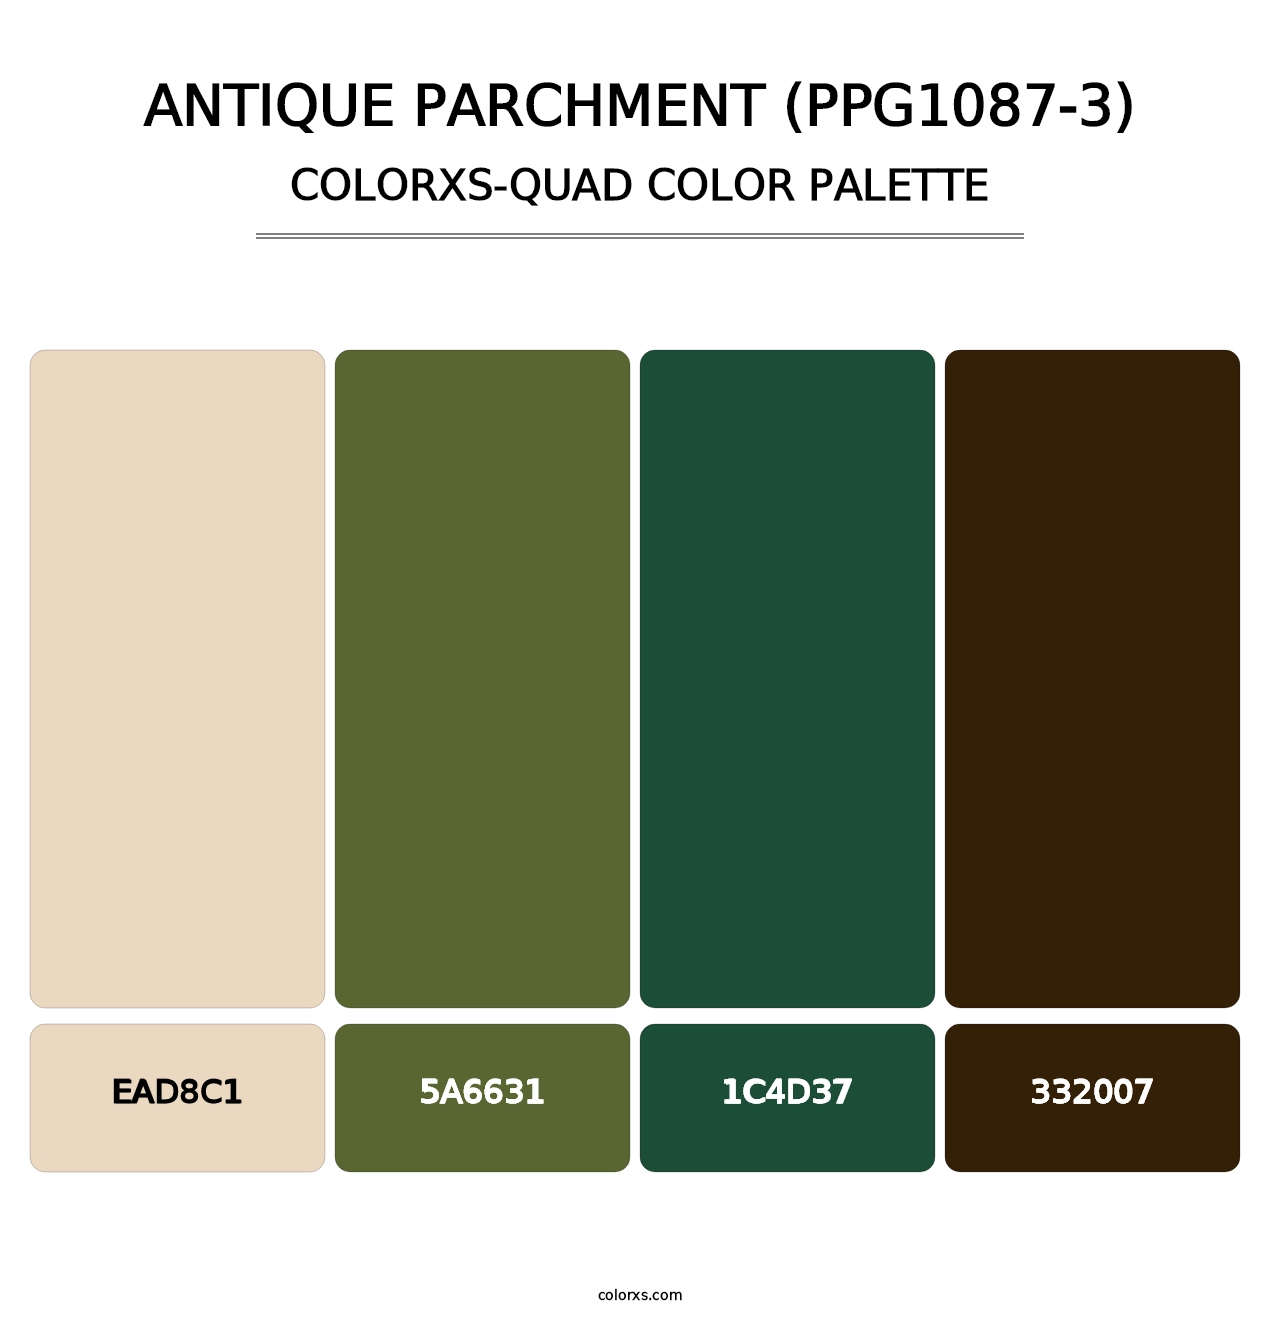 Antique Parchment (PPG1087-3) - Colorxs Quad Palette